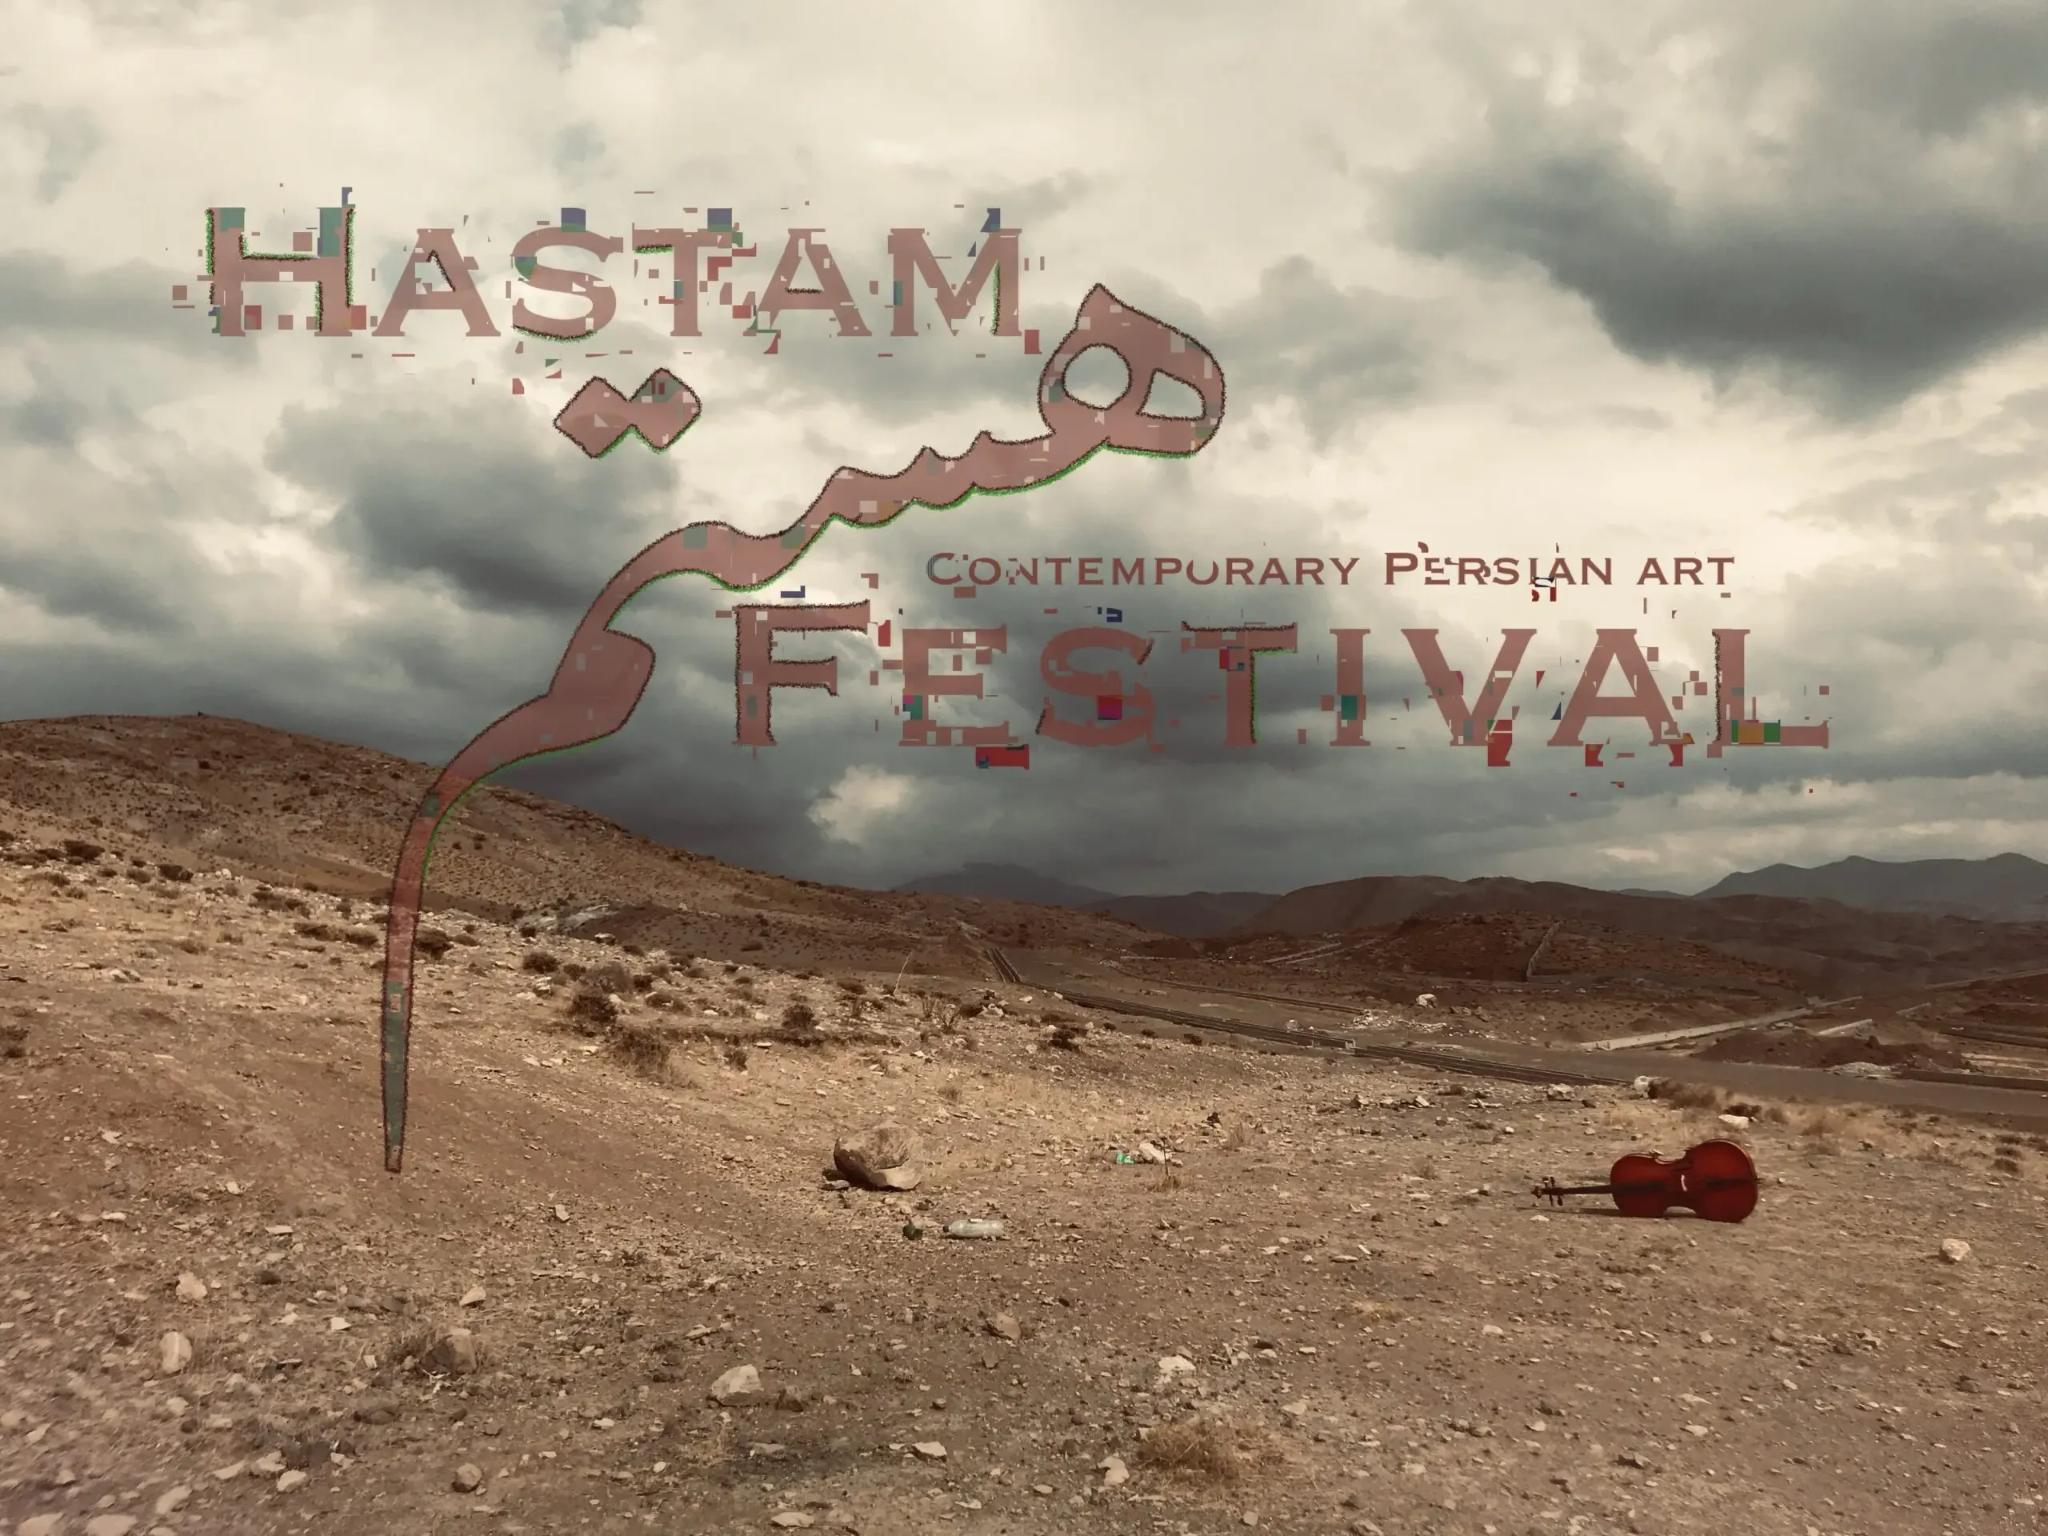 Foto einer Wüstenlandschaft mit hellen und dunklen Wolken. HASTAM FESTIVAL Schriftzug und Logo